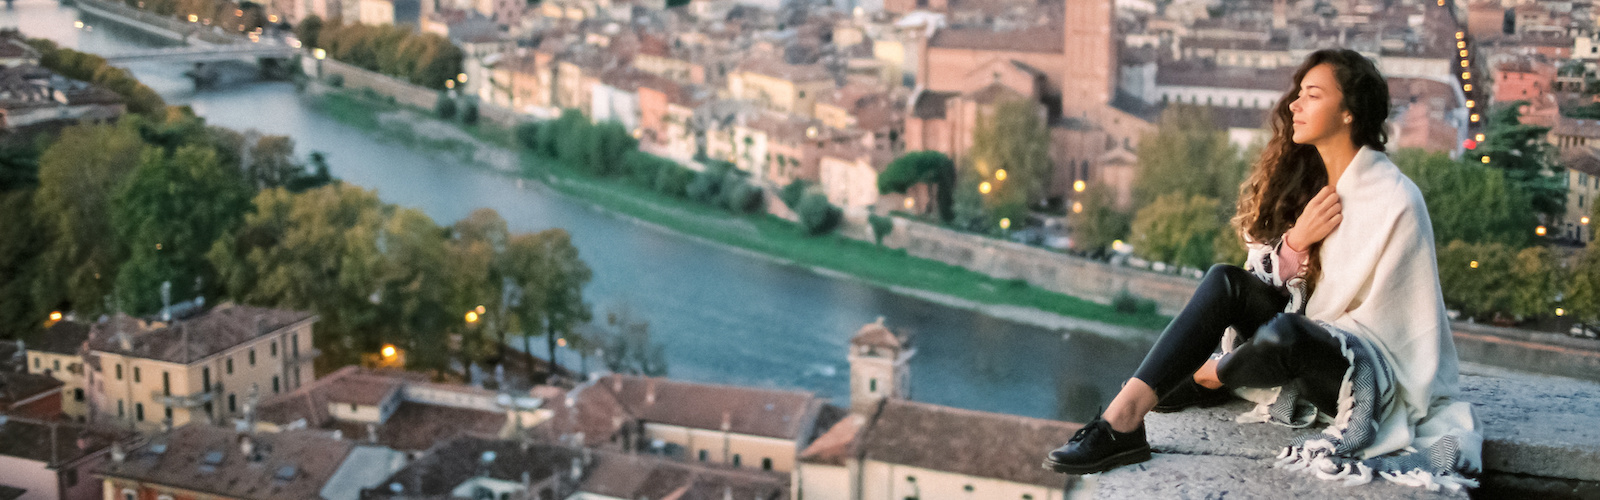 Premiazione concorso fotografico e inaugurazione mostra “Racconta la Verona che cambia in un click” Una mostra fotografica che documenta le trasformazioni nei quartieri di Verona e le pone a confronto con foto d’archivio